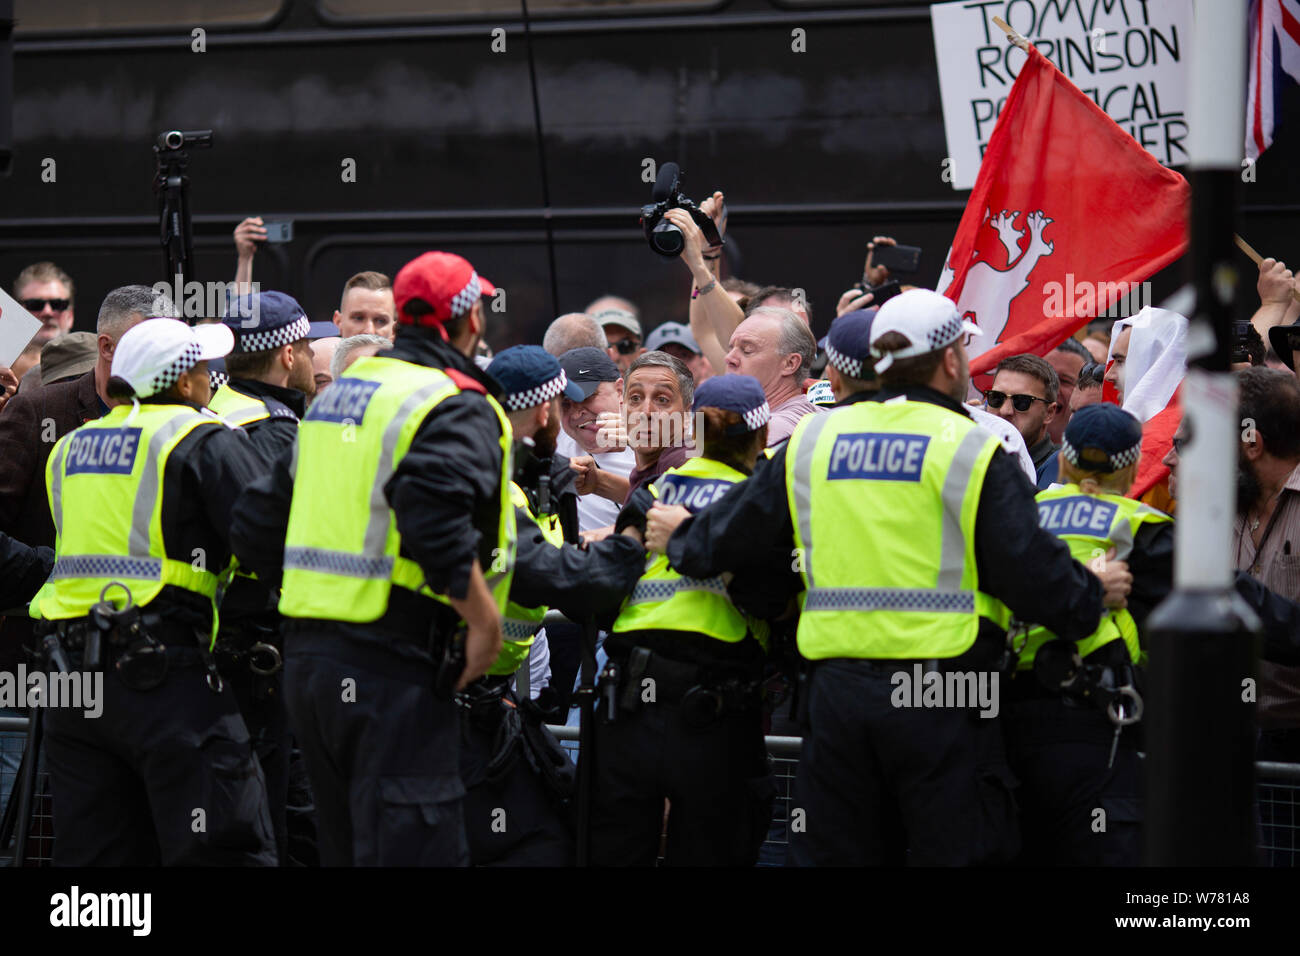 "Die demonstranten sich Tommy' Handgemenge mit dem Polizisten während des Protestes." Kostenlose Tommy' Demonstranten auf den Straßen von London die Freilassung der Inhaftierten weit rechts Aktivist Tommy Robinson. Antifaschistischen Demonstranten gegen den Protest und erklärte, dass die Anhänger von Tommy Robinson' nicht unumstrittenen 'ca März. Stockfoto